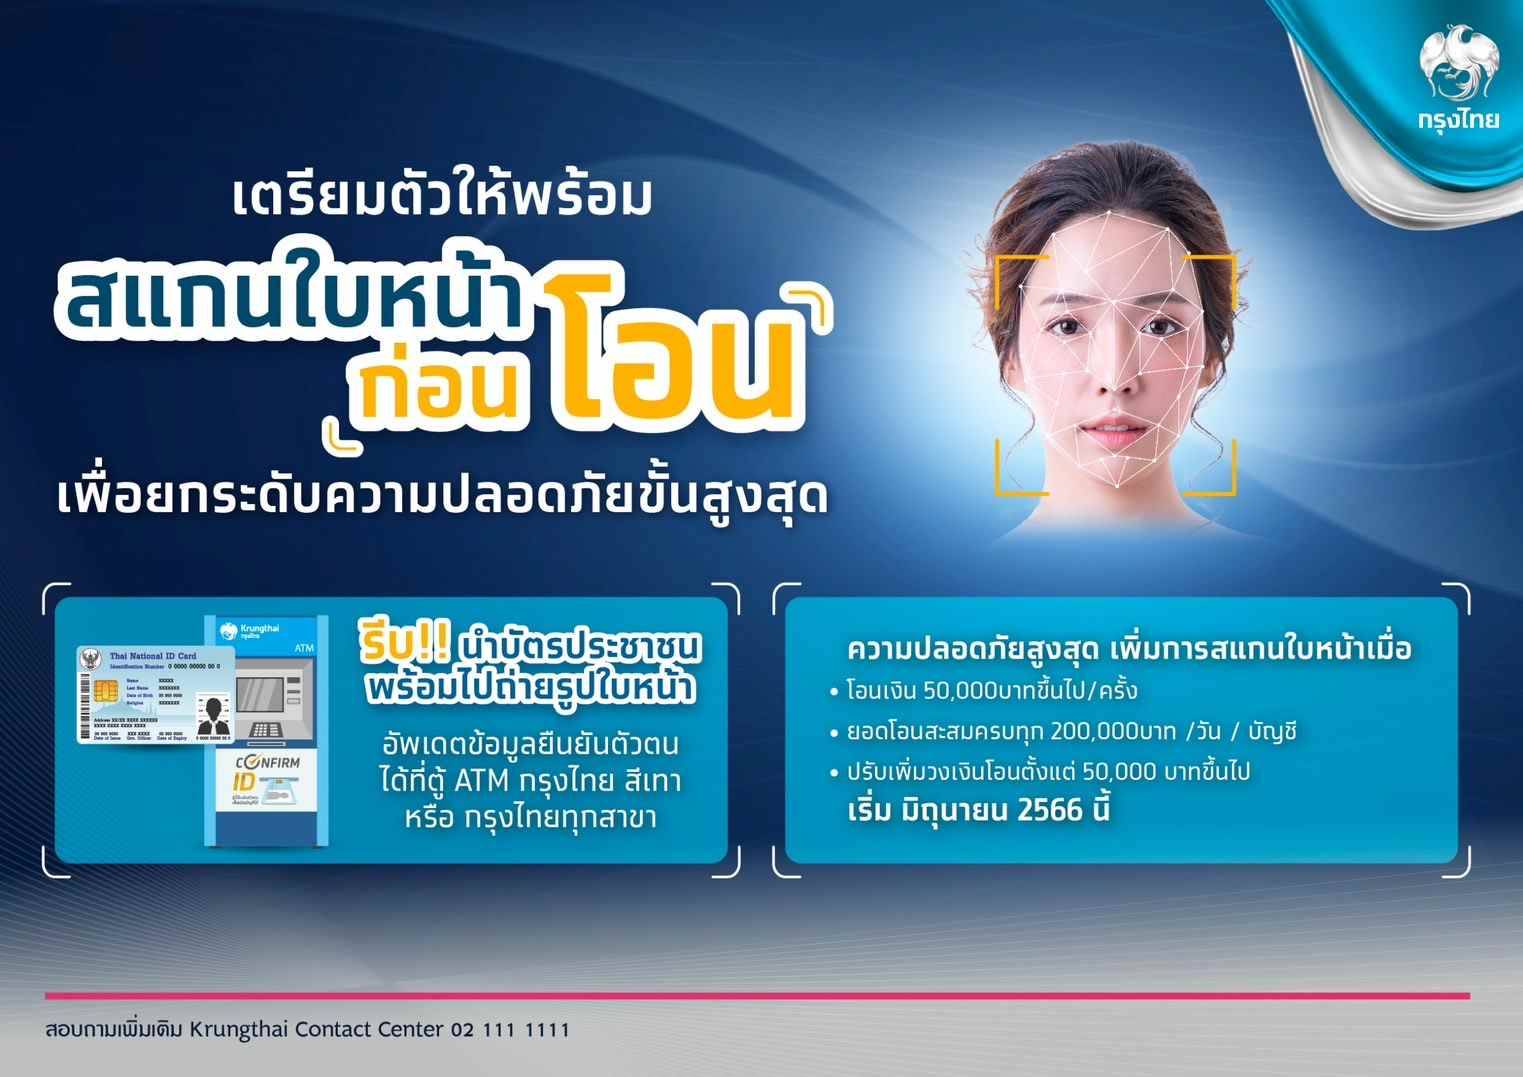 “กรุงไทย” เสริมแกร่งเทคโนโลยีสแกนใบหน้ายกระดับความปลอดภัยโอนเงิน